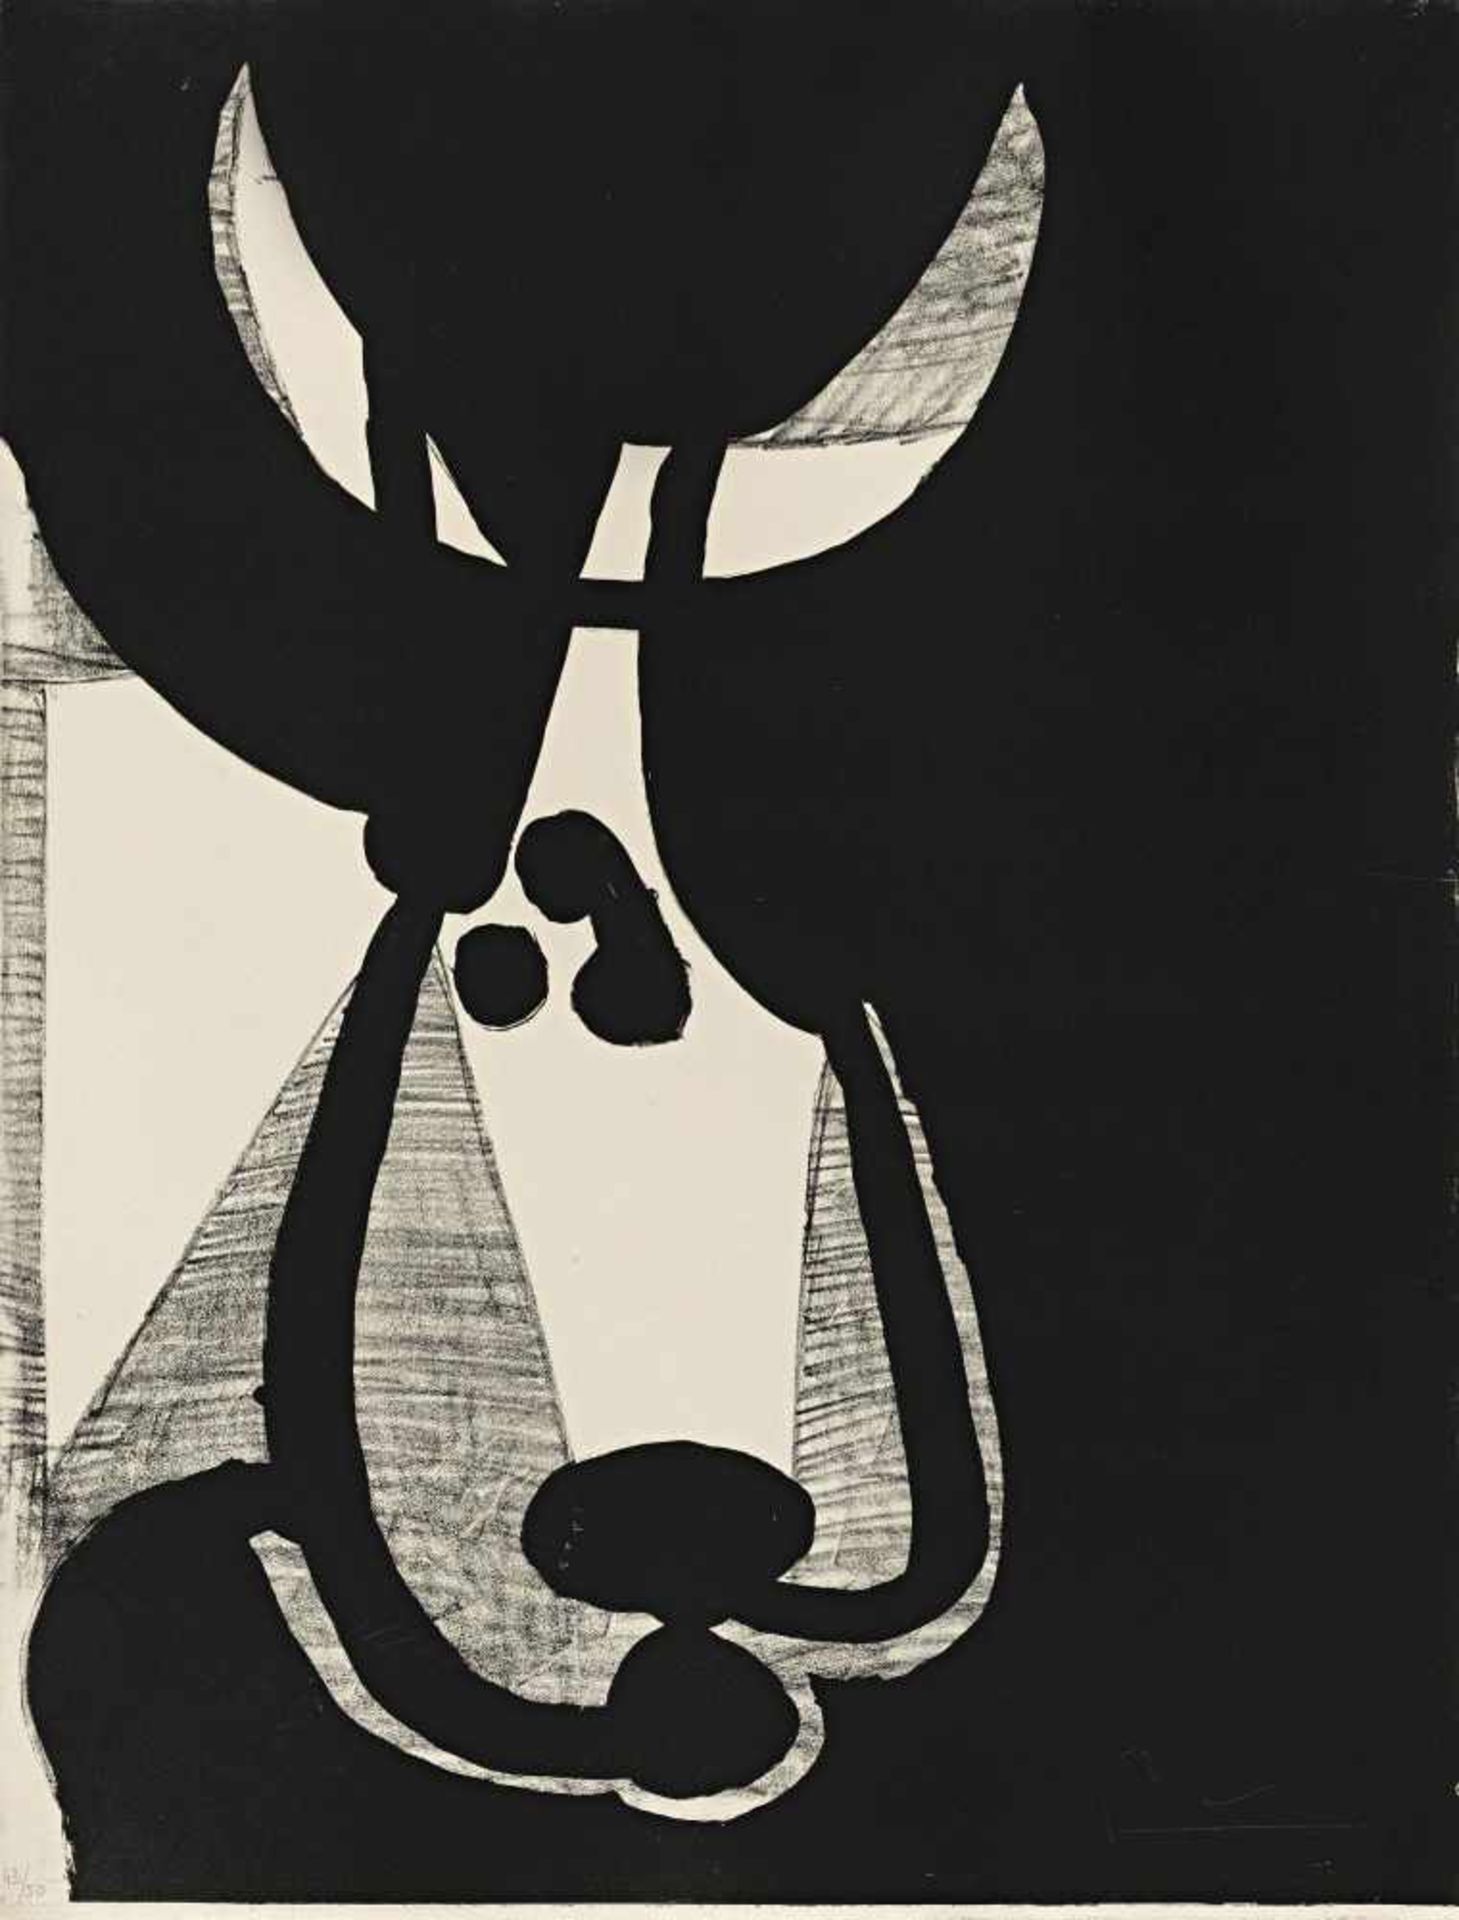 Picasso, Pablo1881 Malaga - 1973 MouginsTête de Taureau, tournée à gauche. 1948. Lithograph on